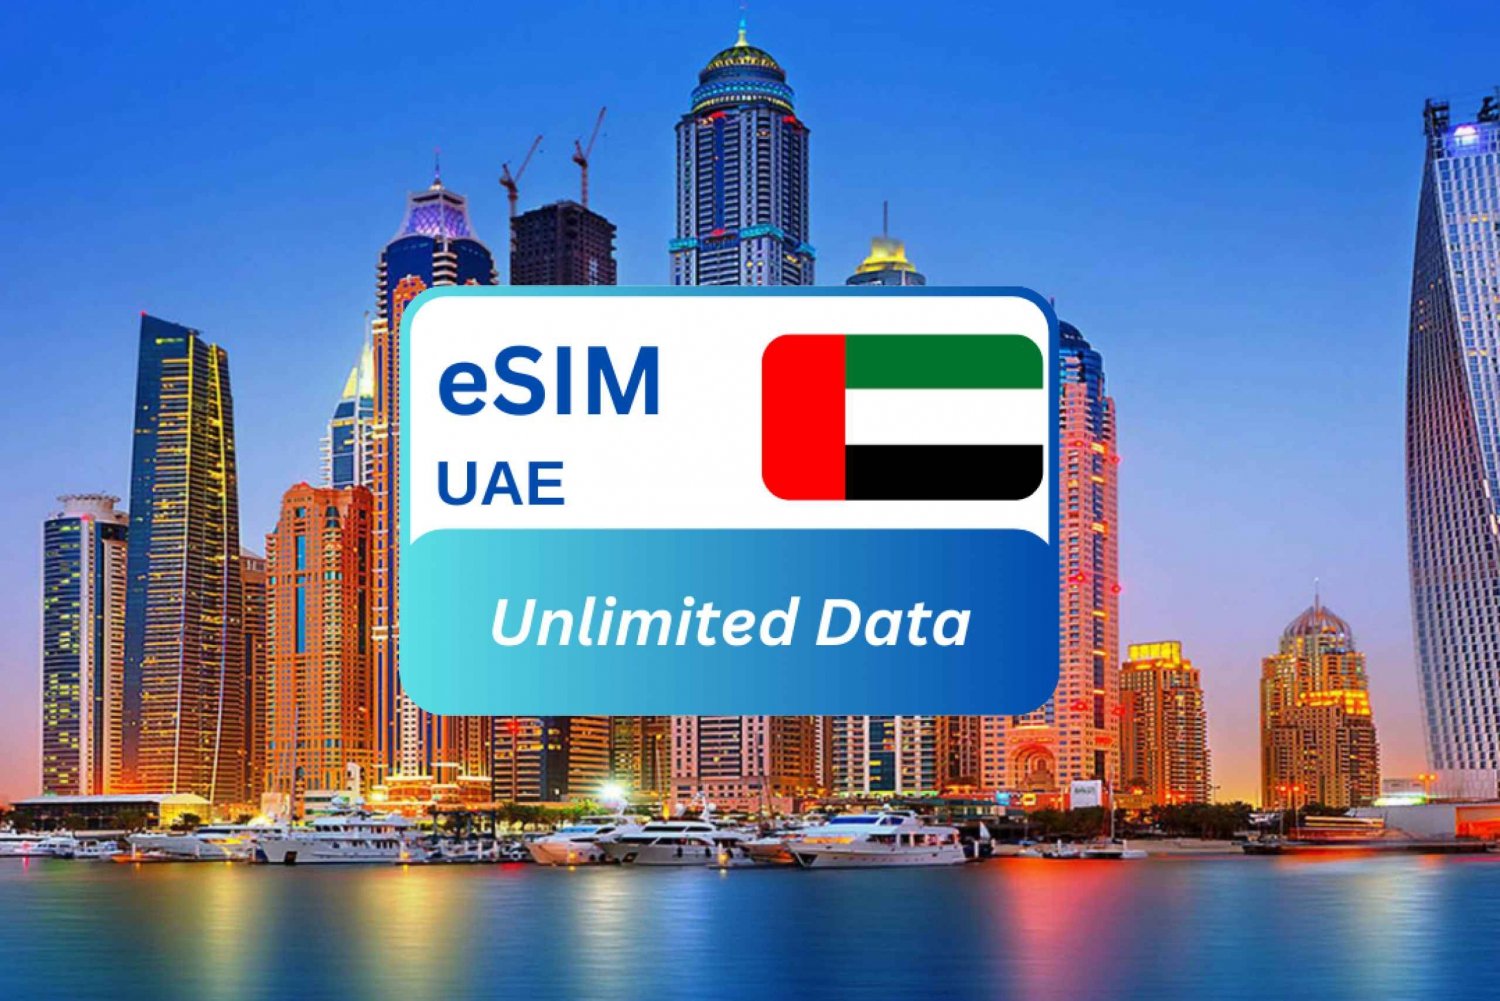 Piano dati eSIM illimitato per i viaggiatori del Medio Oriente